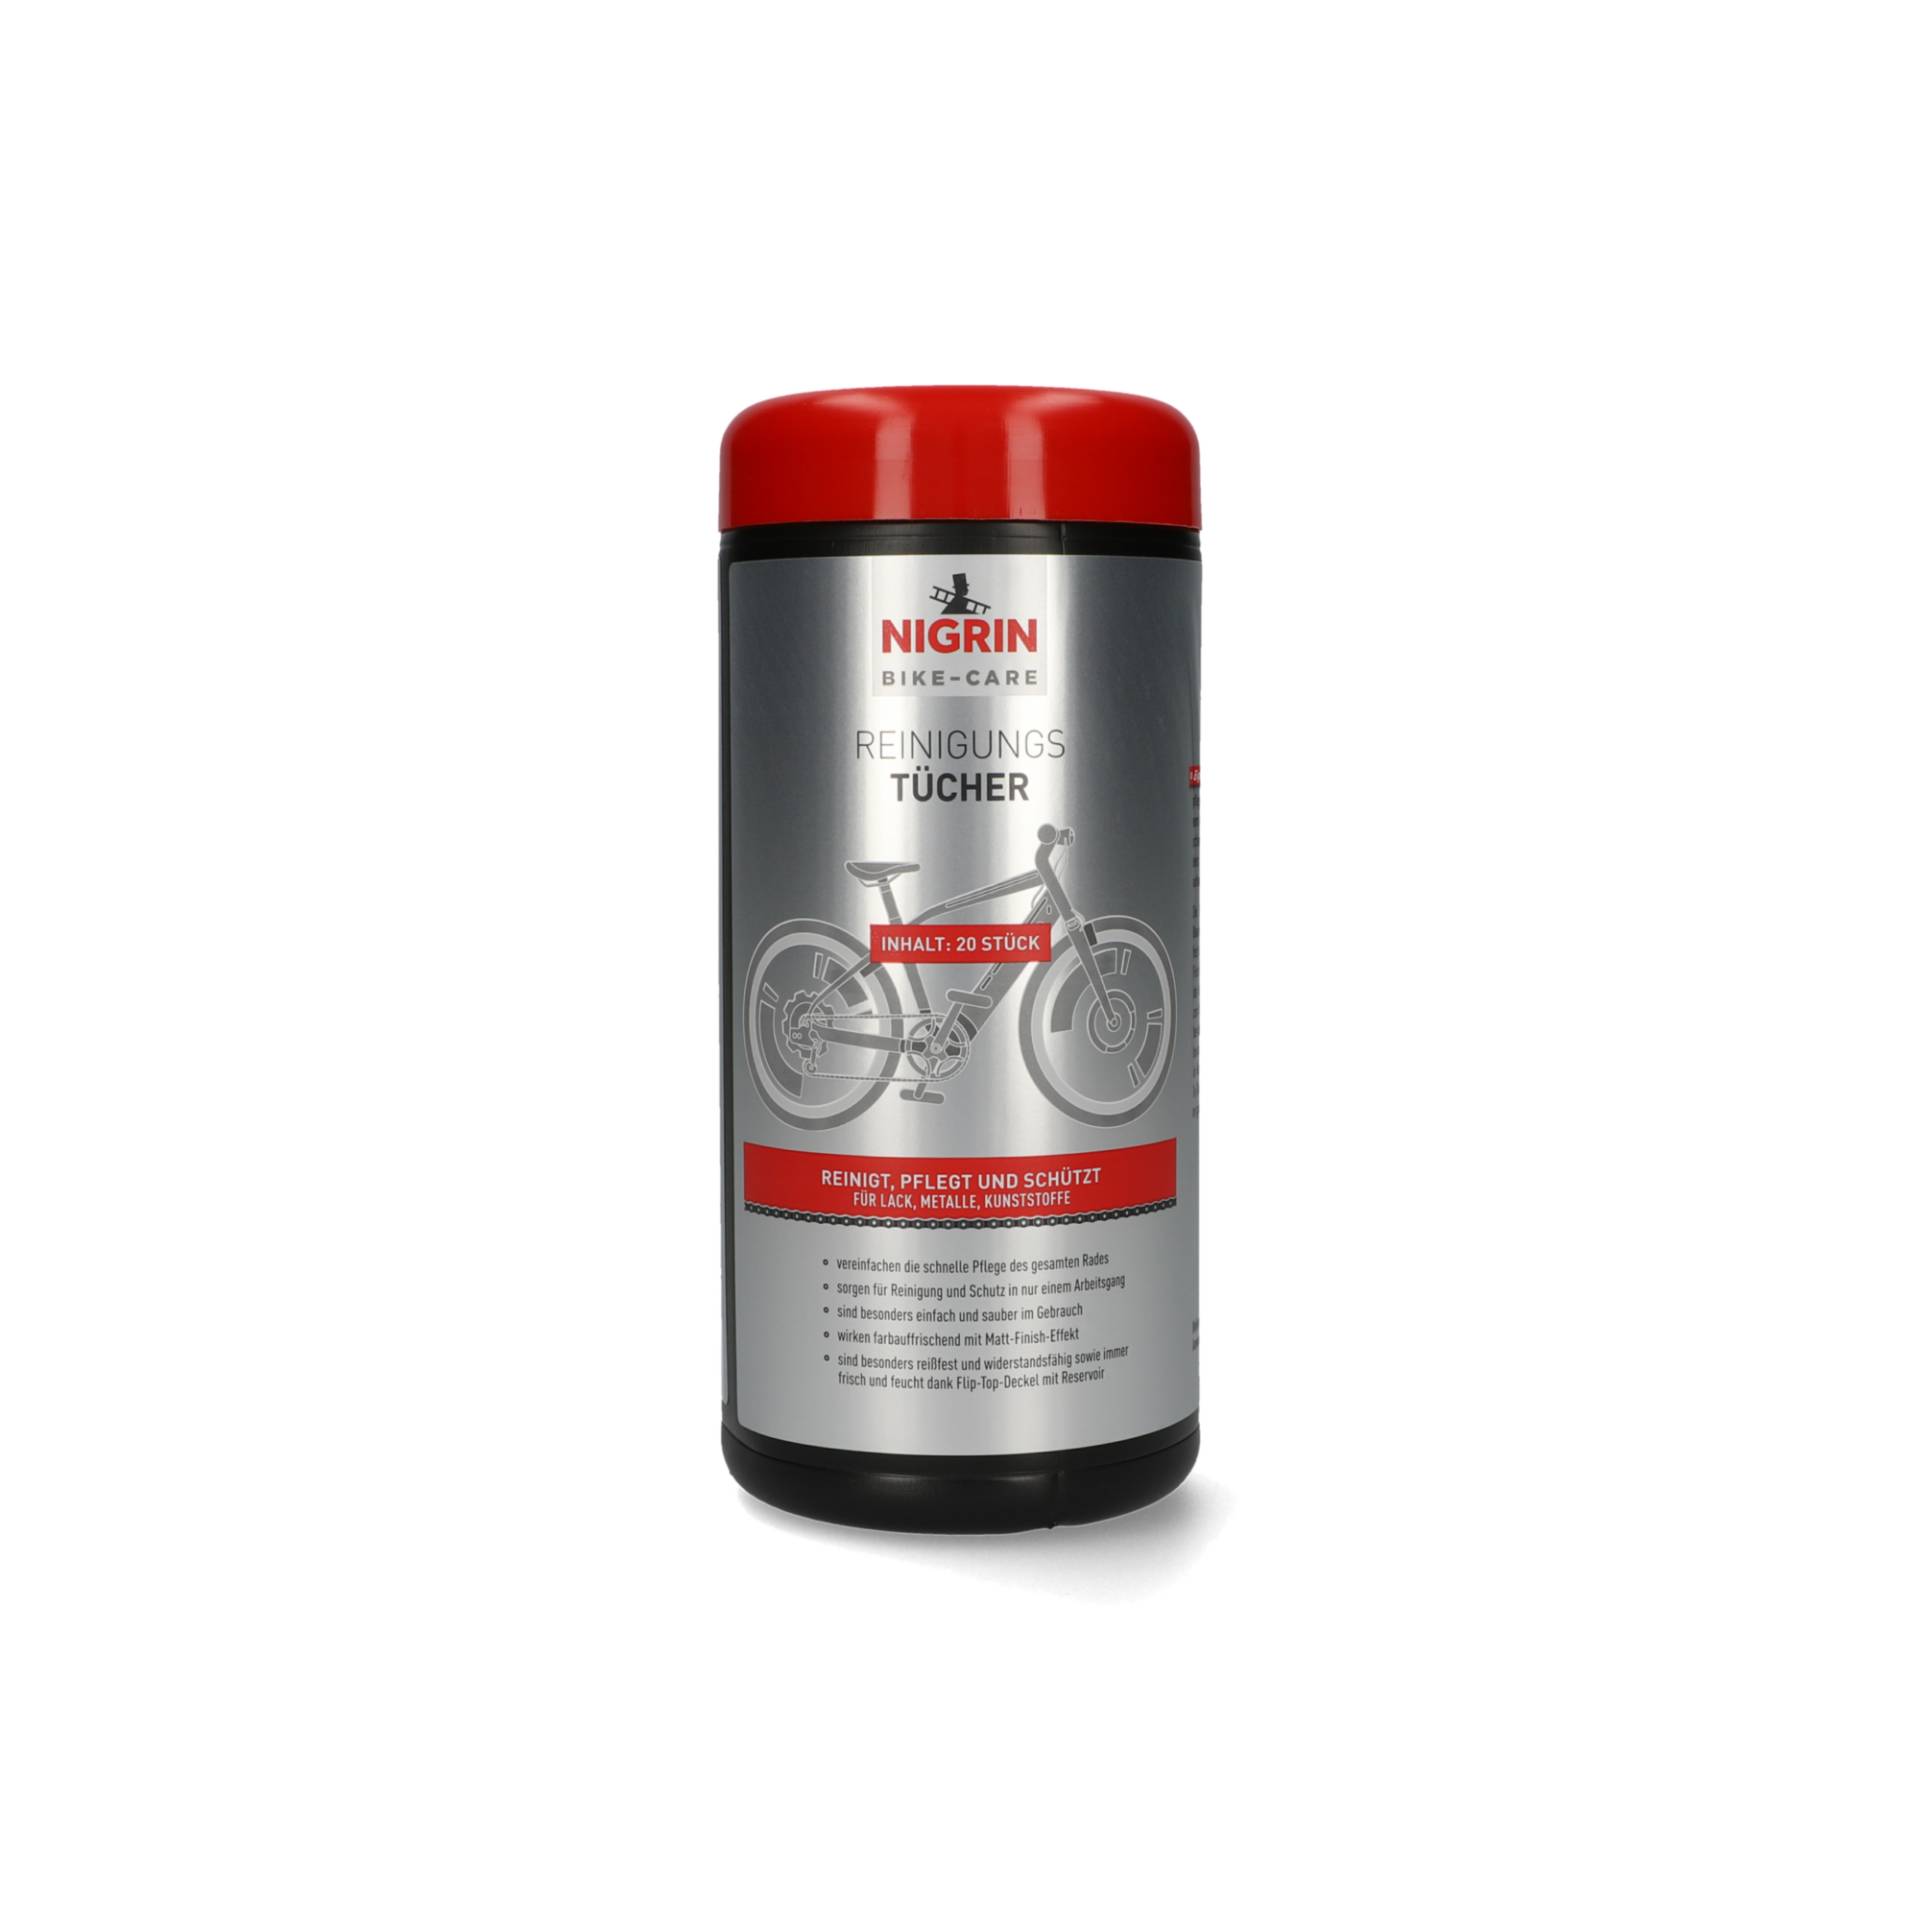 Nigrin Fahrrad Reinigungstücher 'Bike-Care' 20 Stück von Nigrin